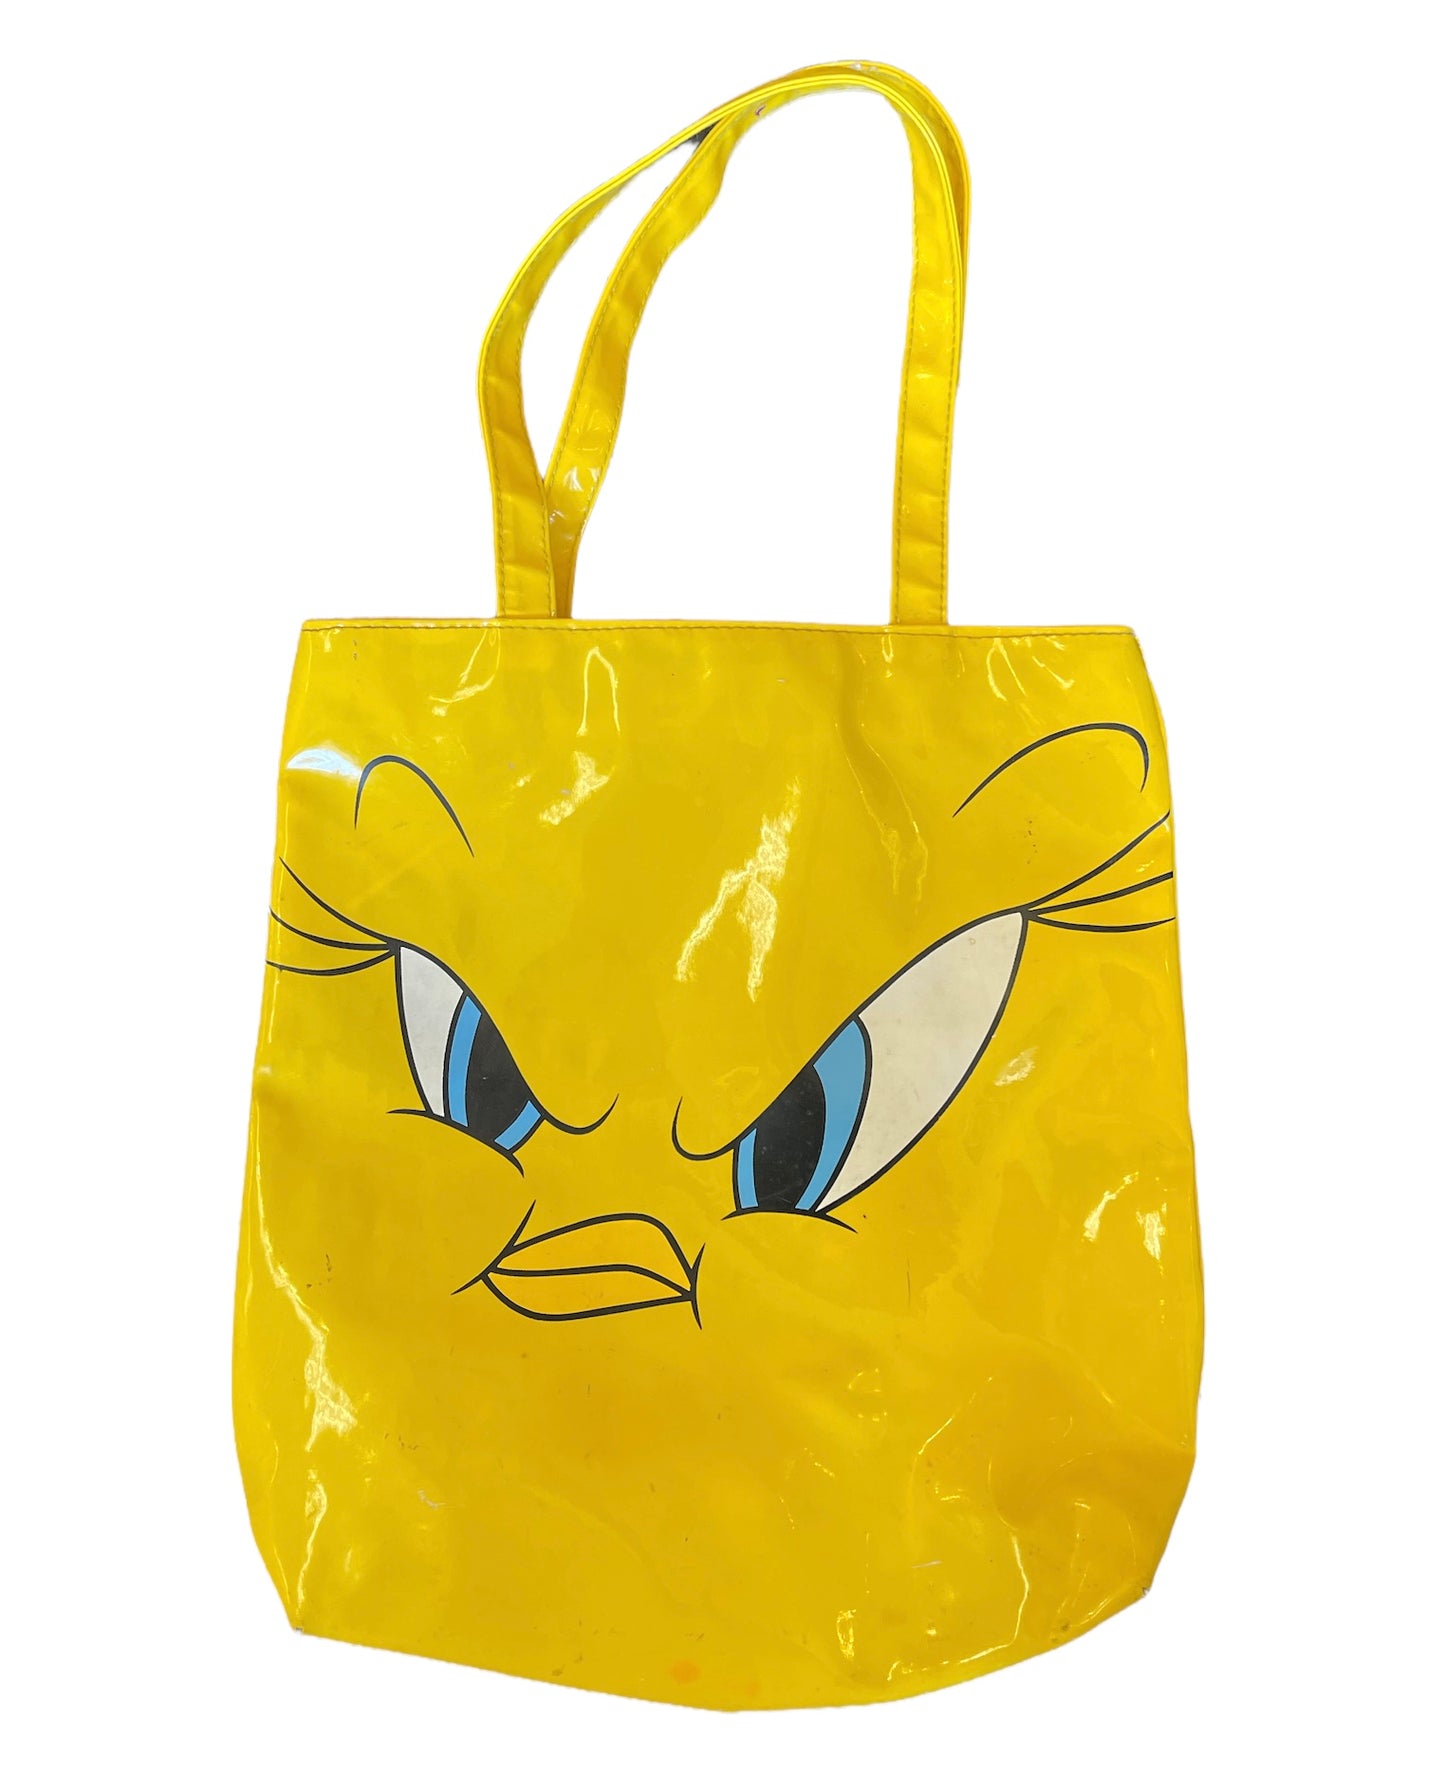 Vintage Looney Tunes Tweety Bird Vinyl Tote Bag